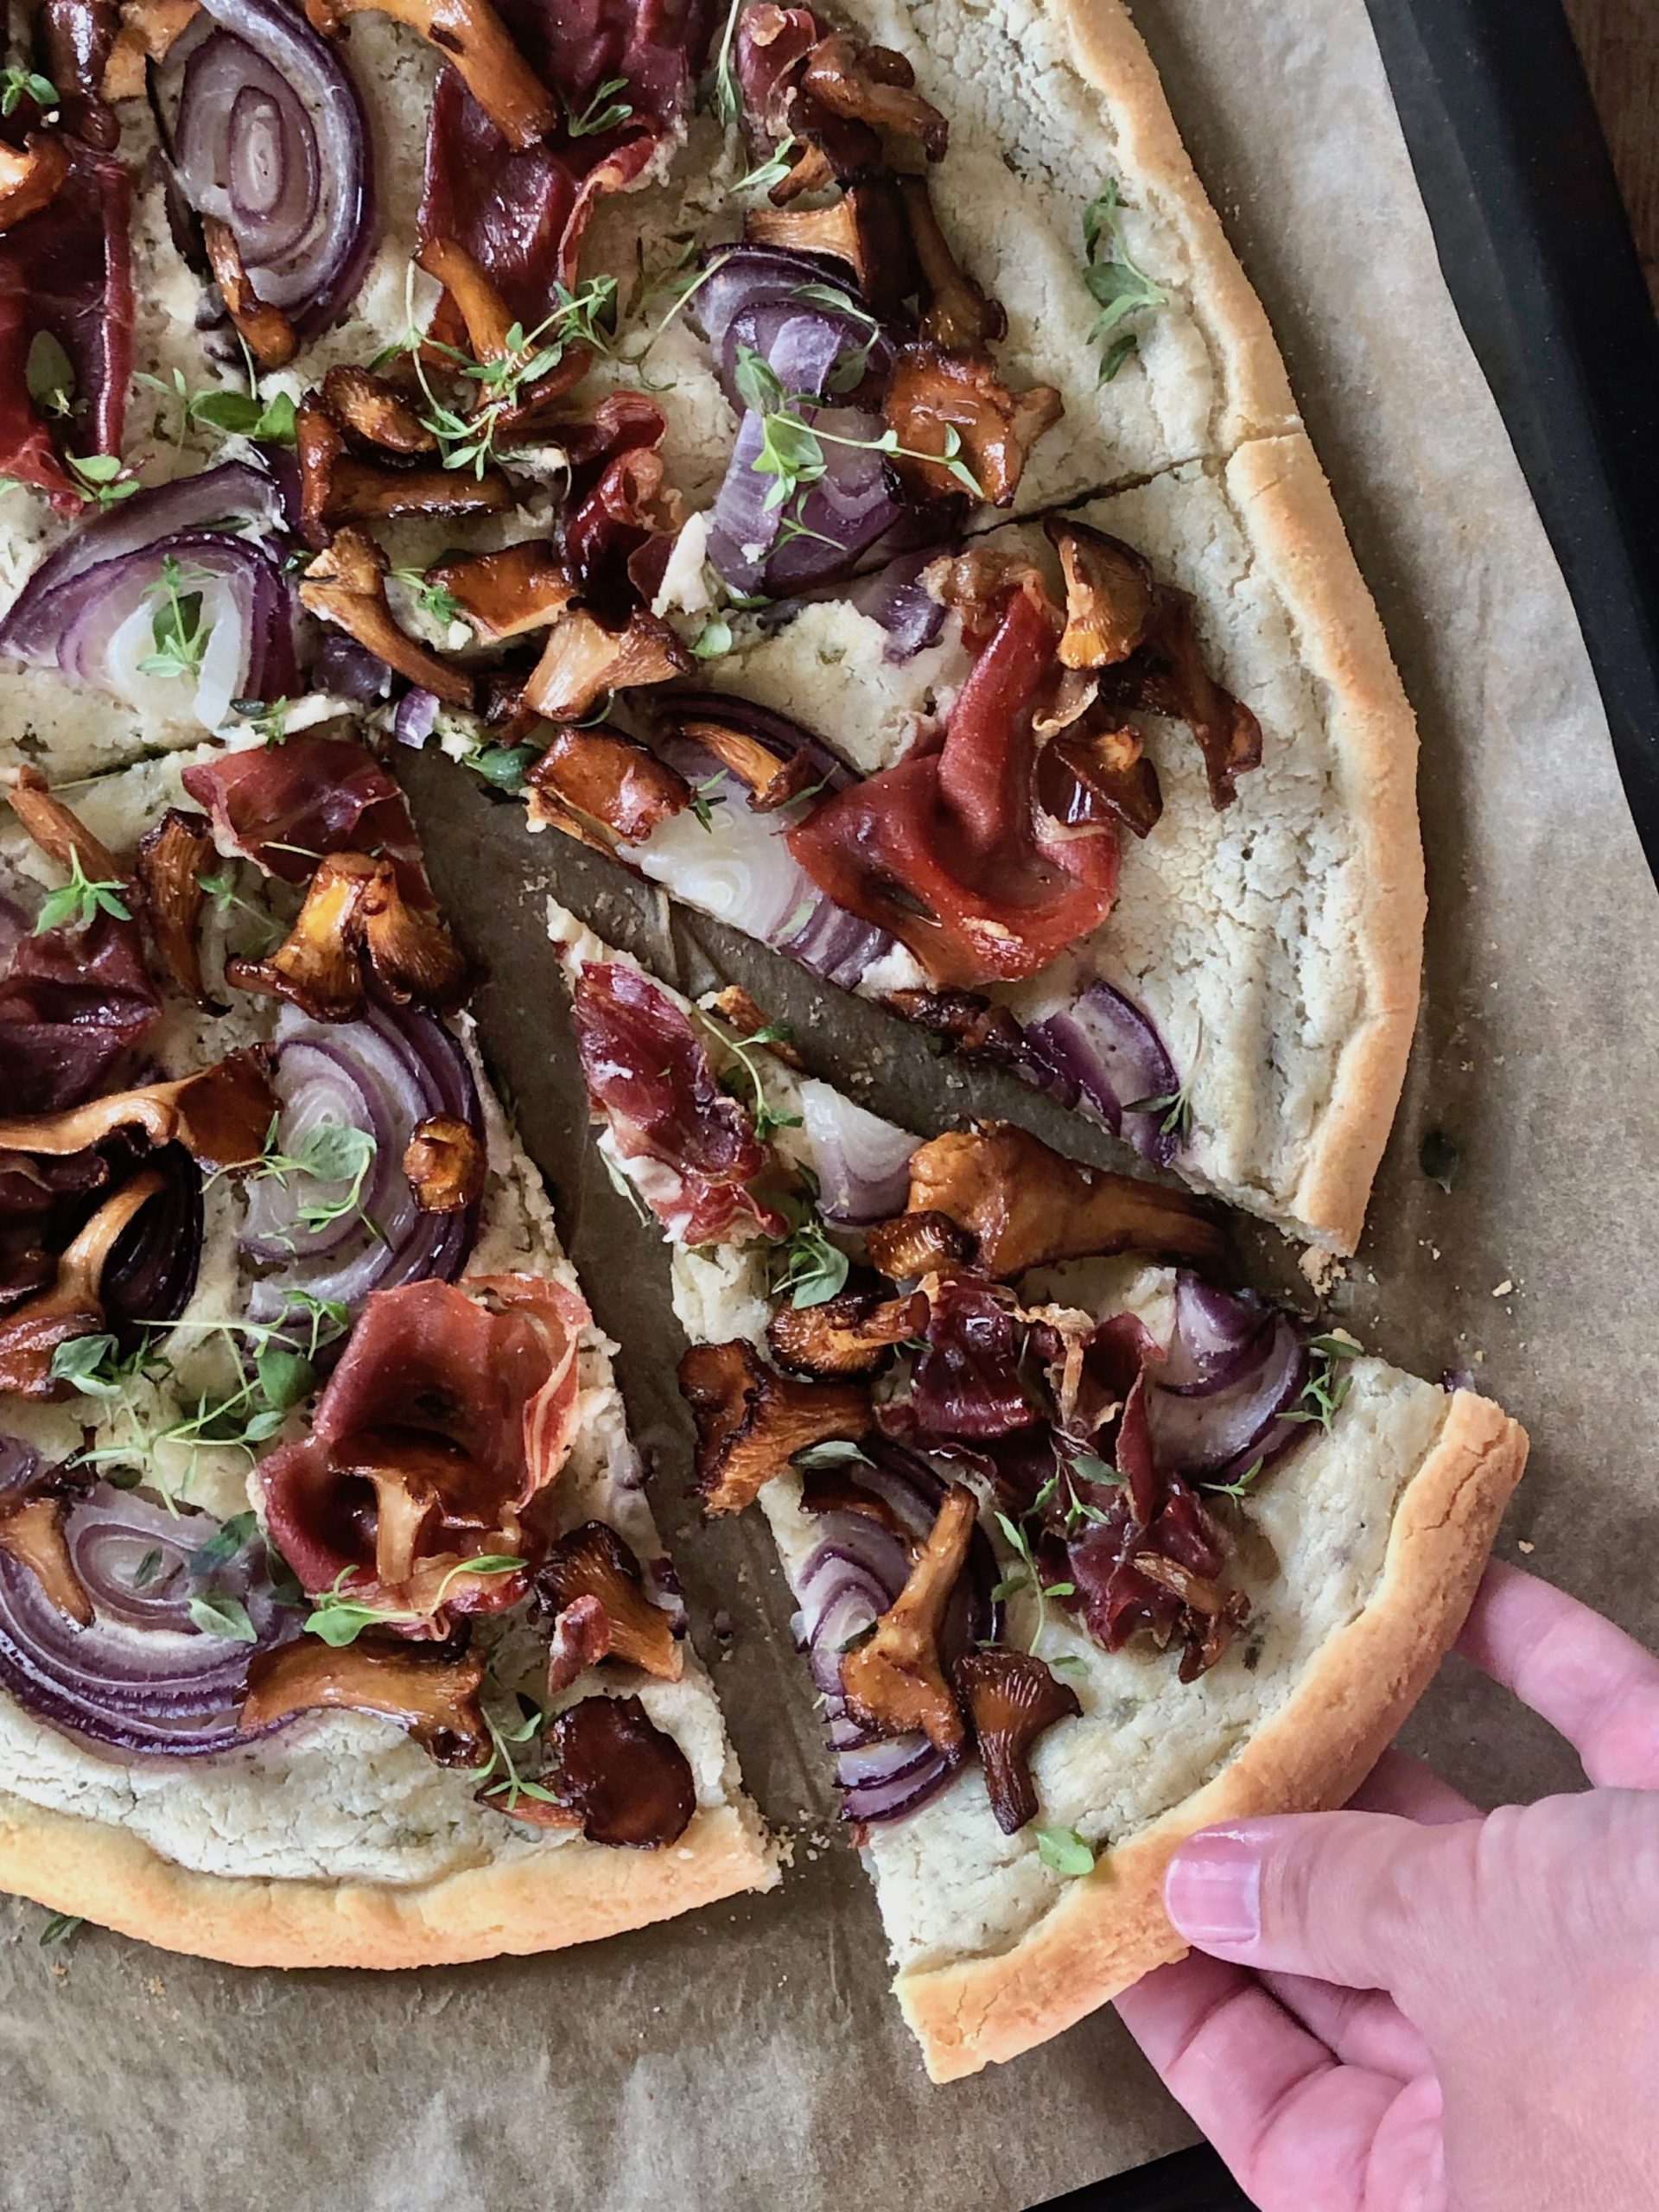 Vit pizza med kantareller - Glutenfri, mejerifri och helt fantastisk!